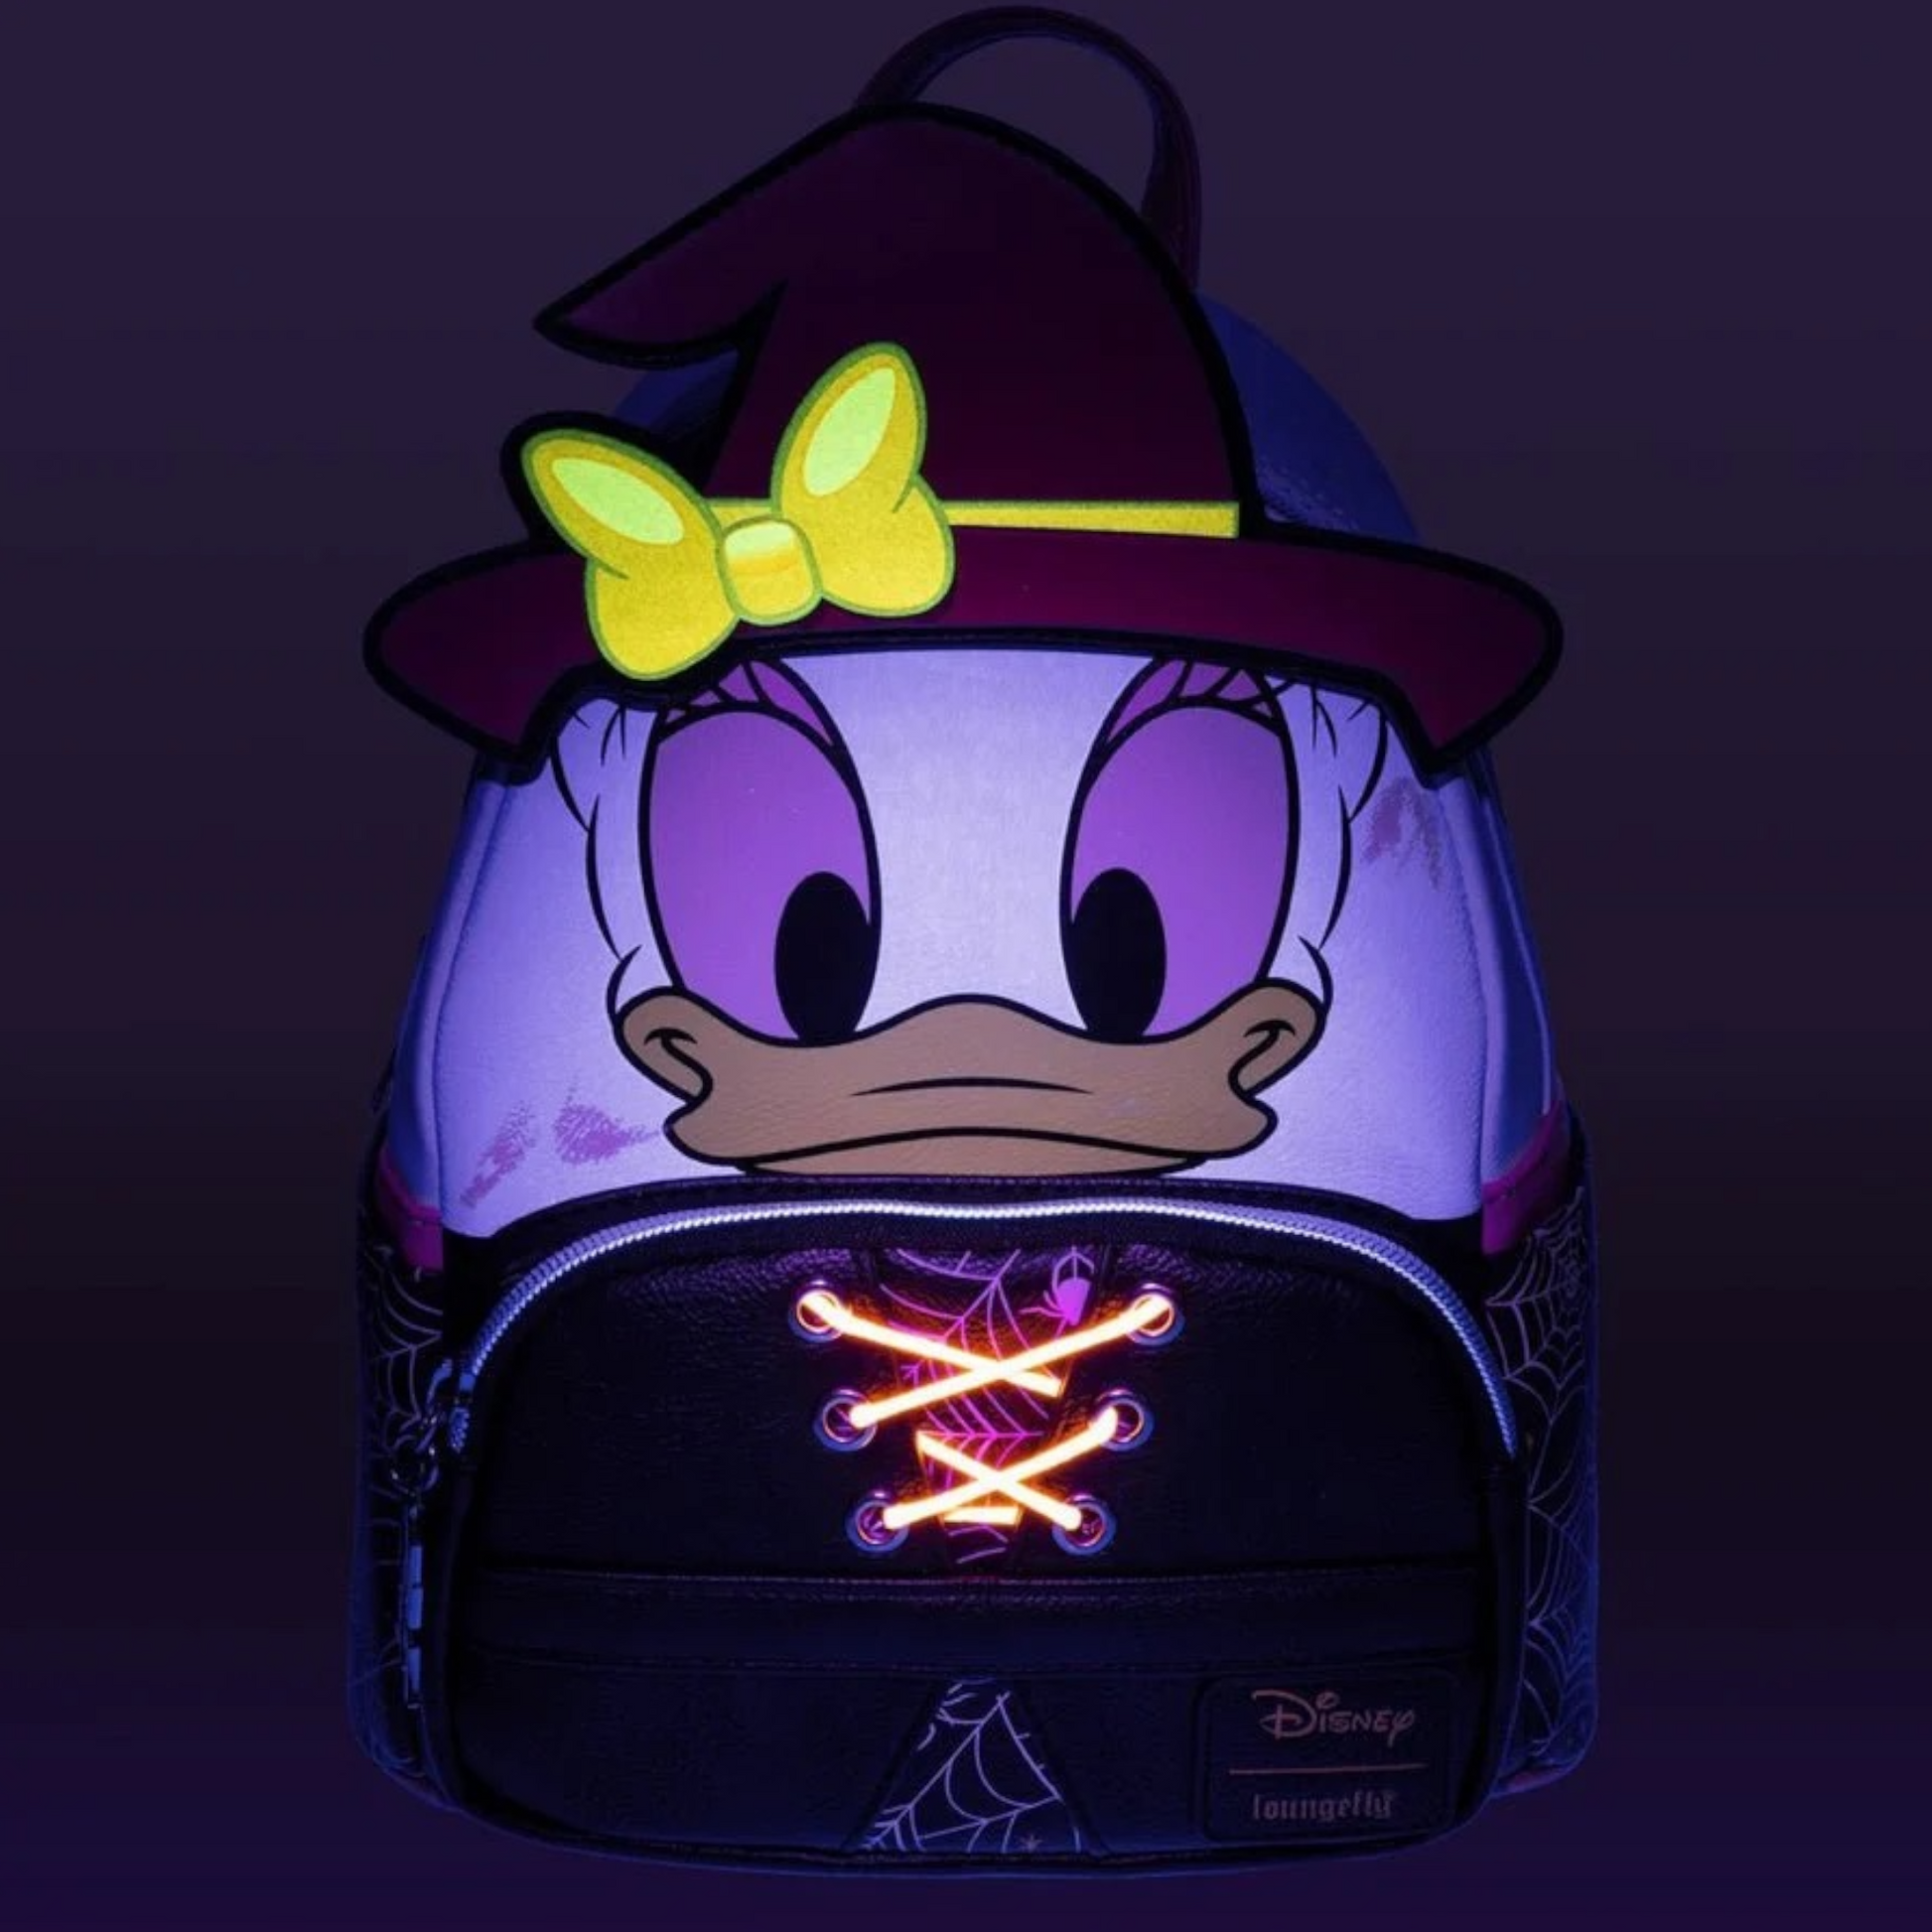 Daisy Mini Backpack